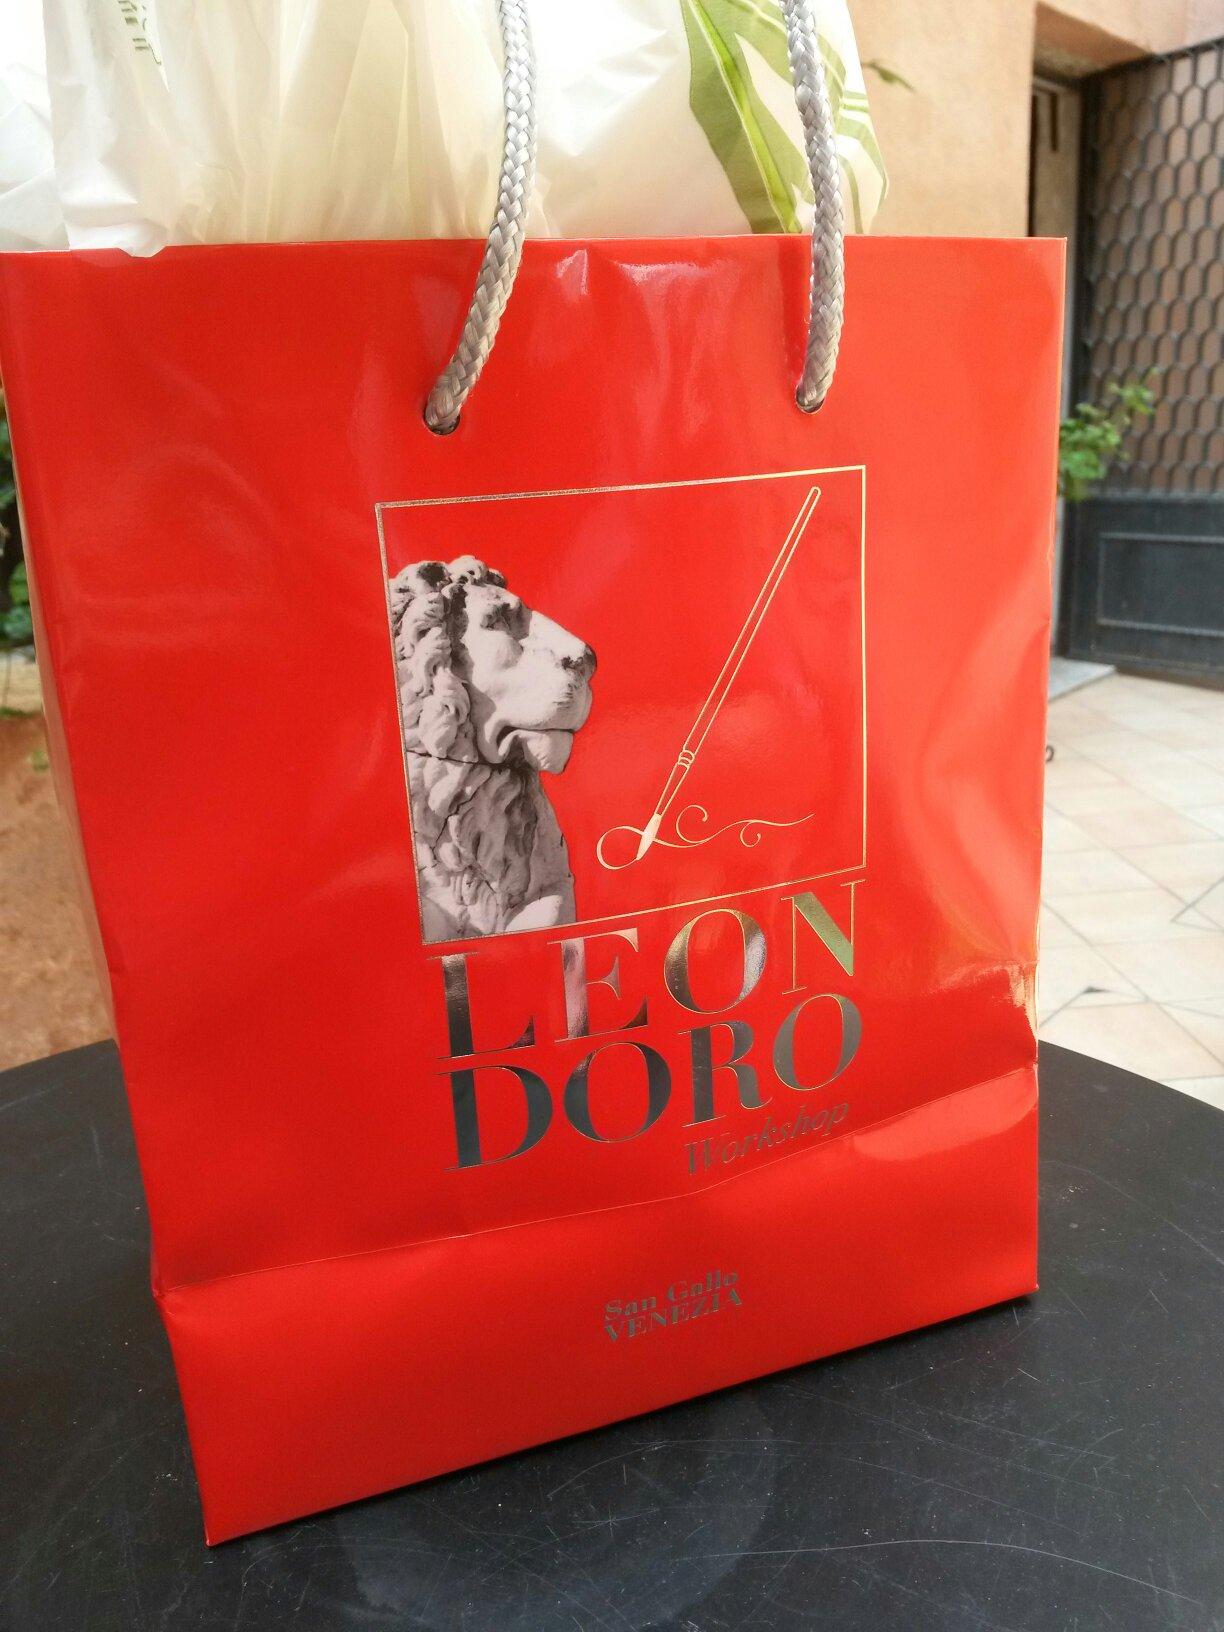 Leon Doro Boutique